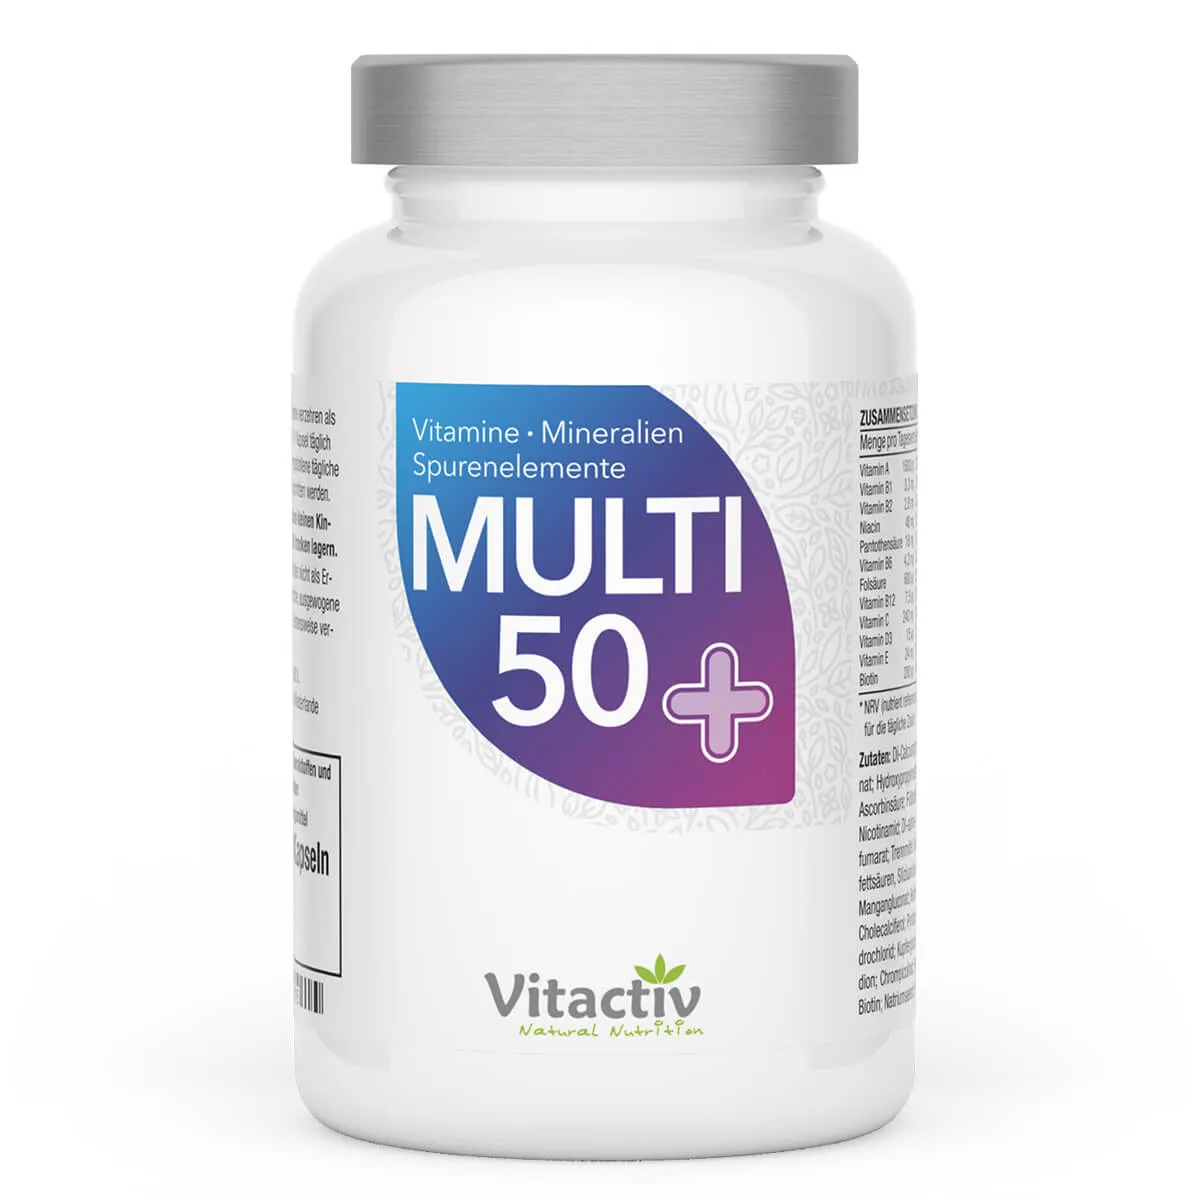 MULTI 50+ Multivitamin Kapseln mit Mineralstoffen